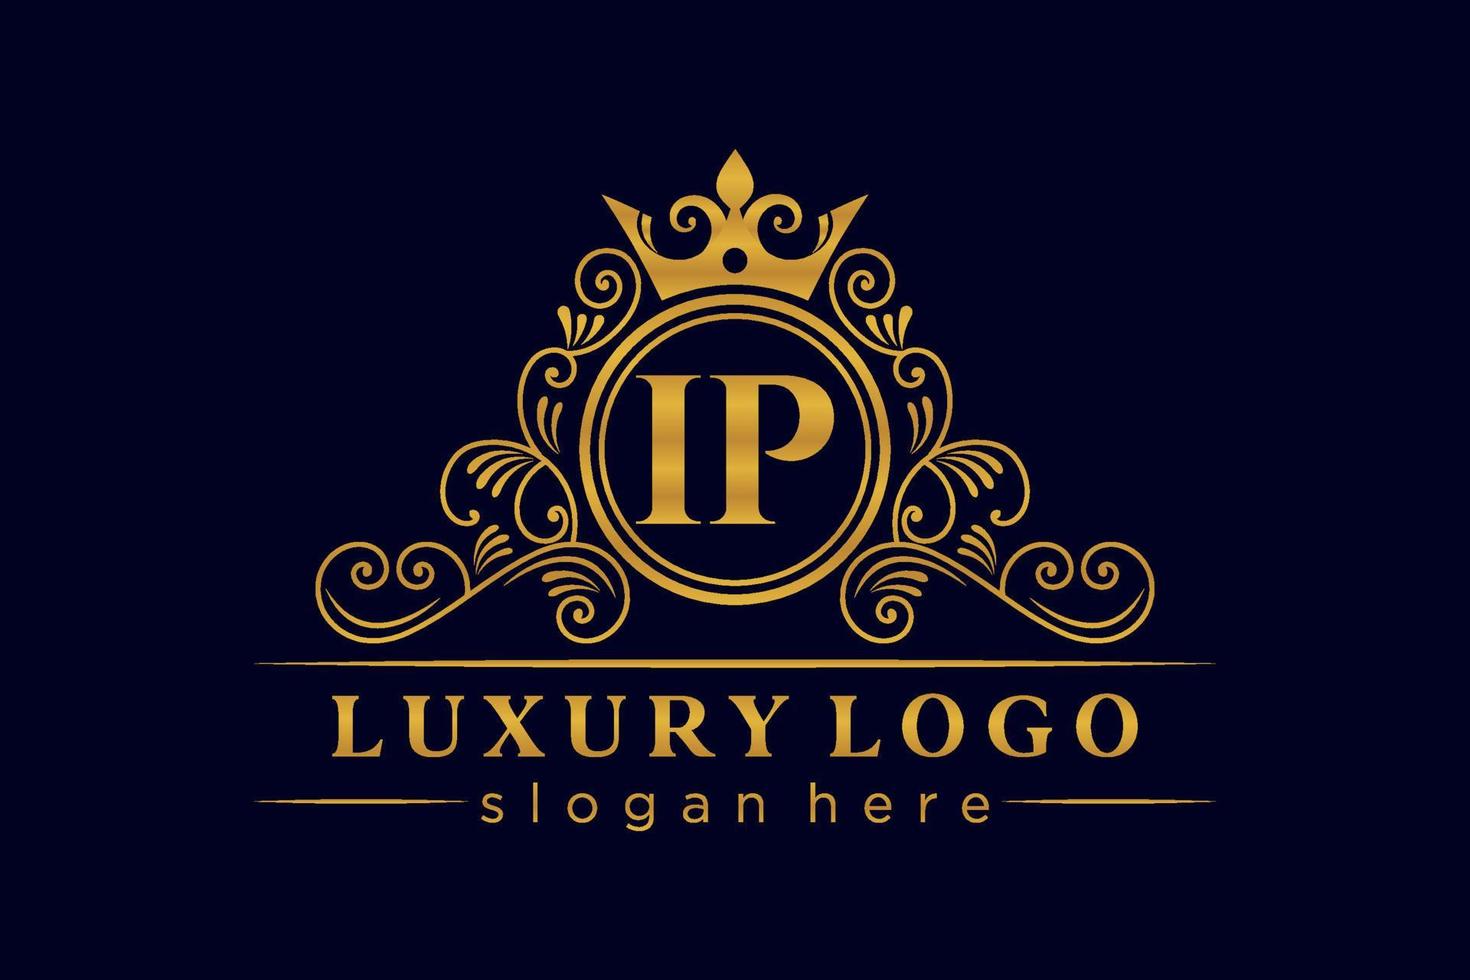 IP Initial Letter Gold calligraphic feminine floral hand drawn heraldic monogram antique vintage style luxury logo design Premium Vector